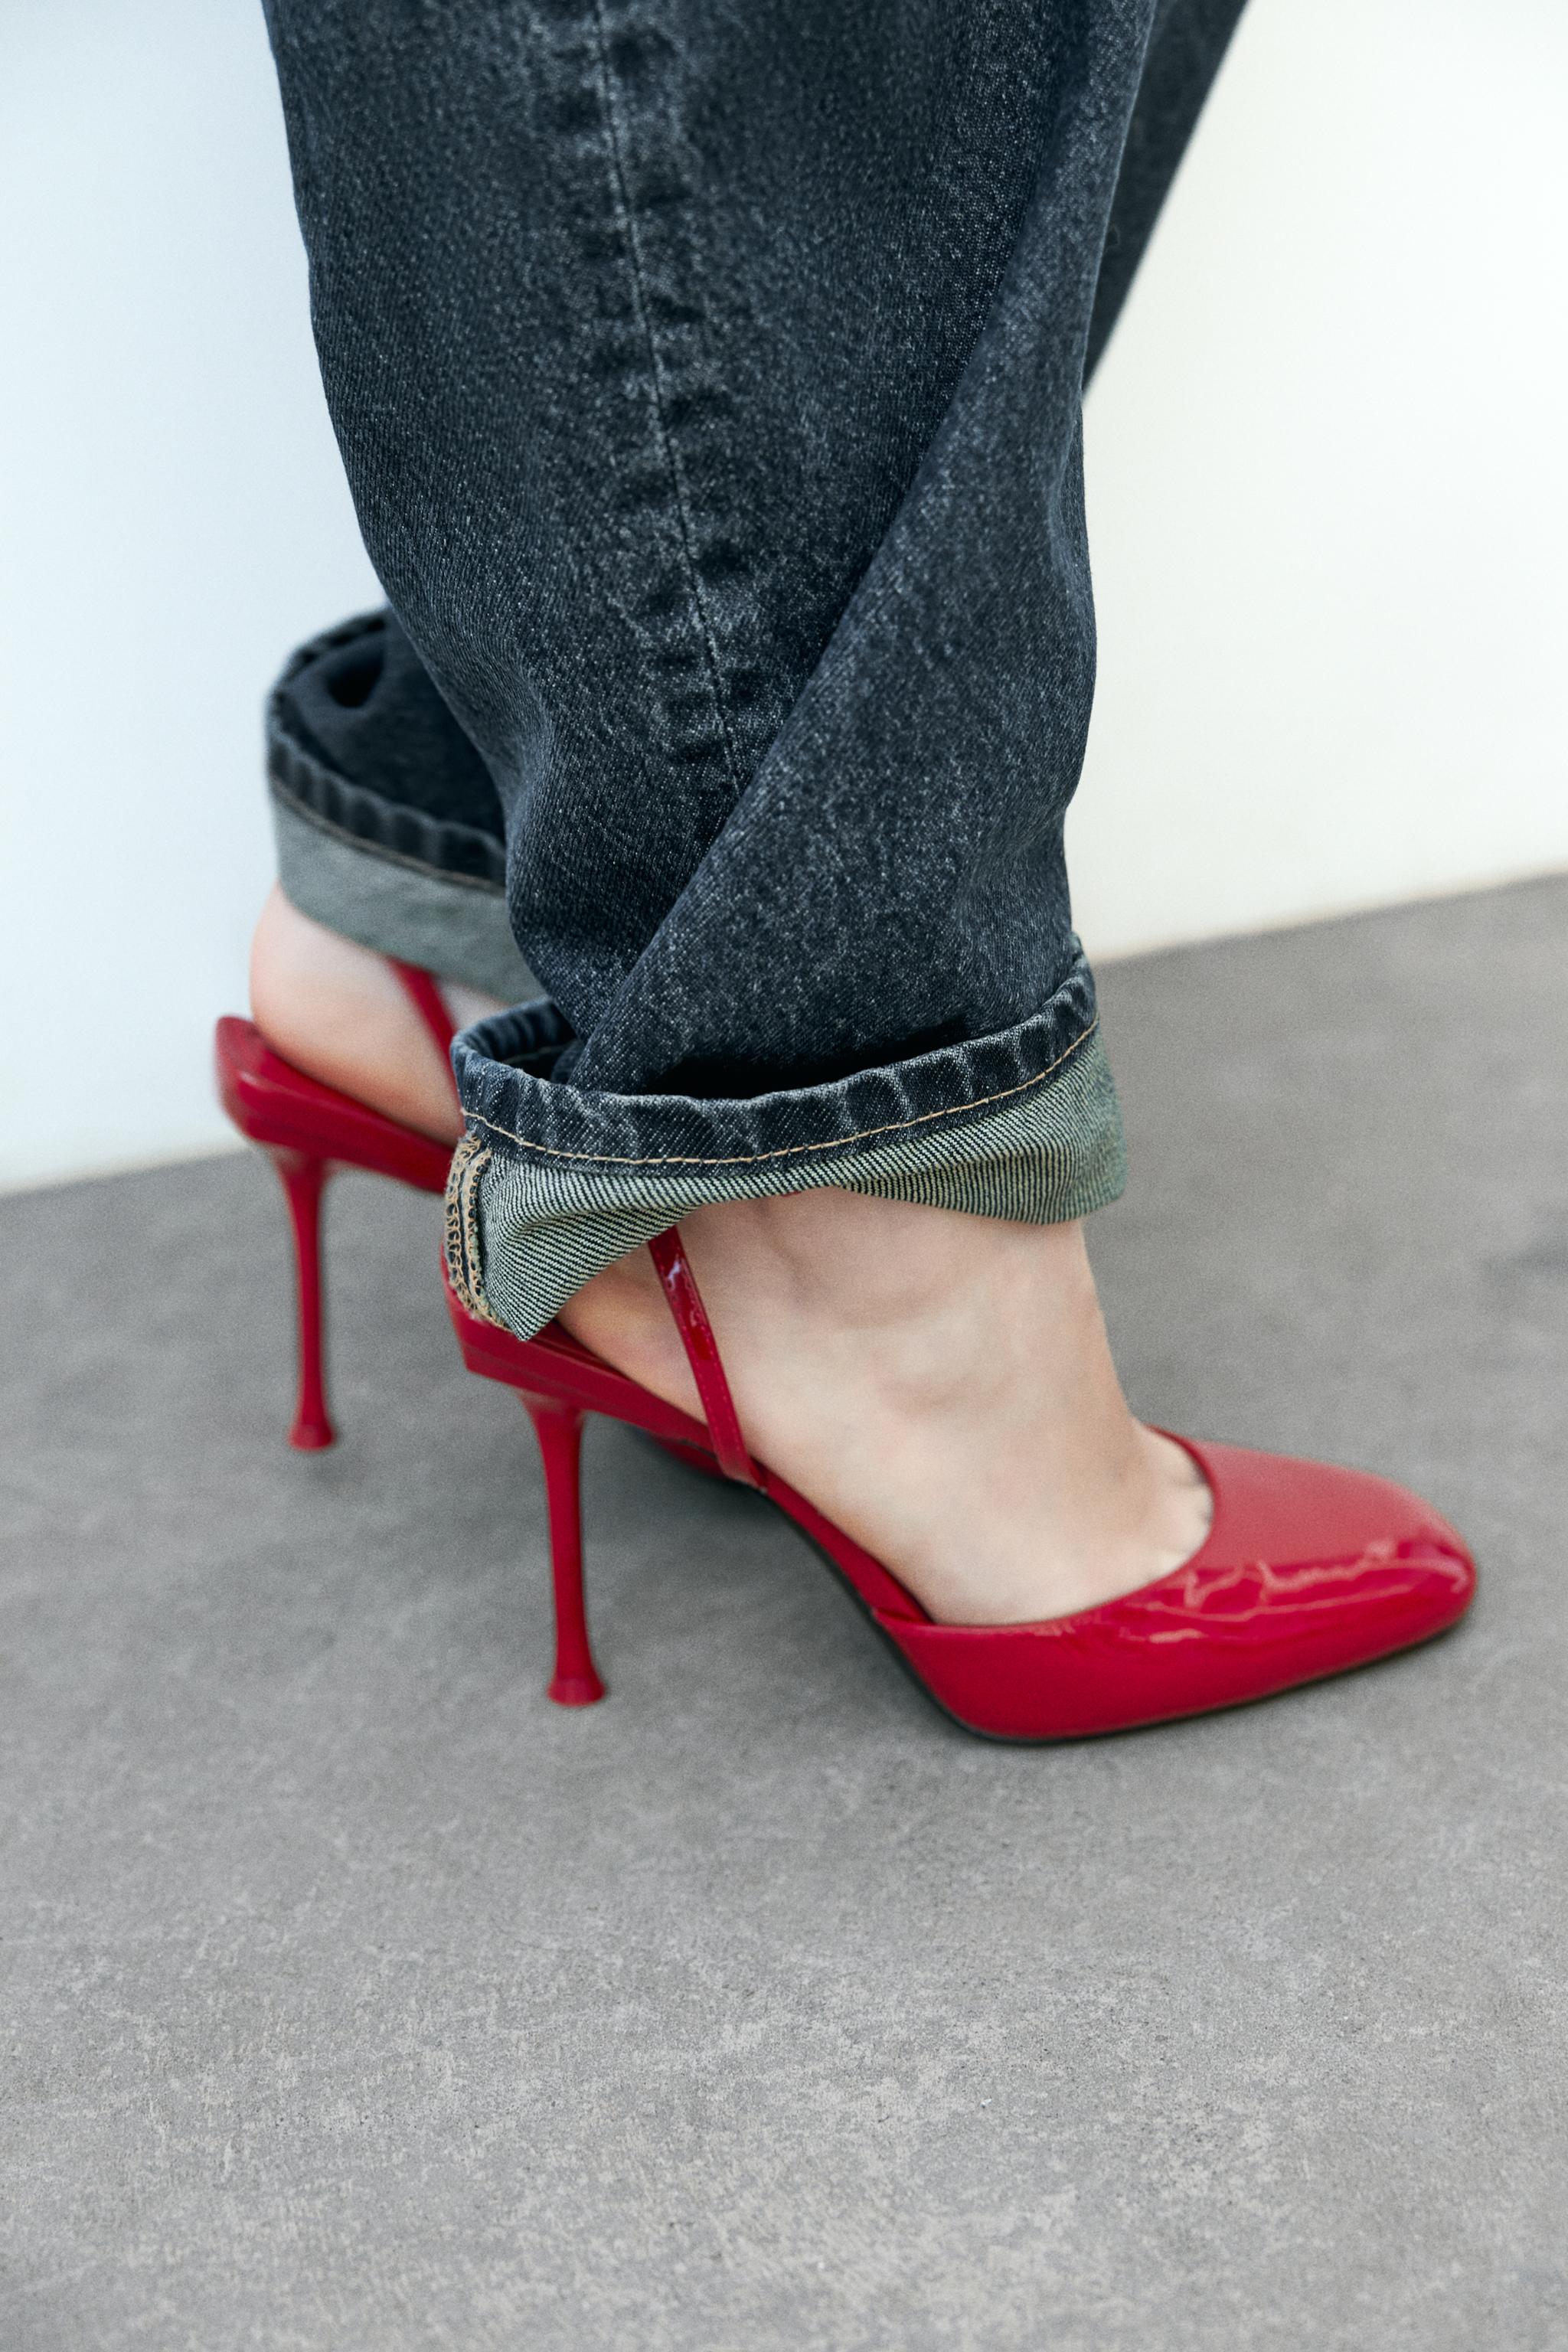 Zara Tri-Color Pointed Toe Court Heel Shoe | Court heels, Heels, Shoes  women heels